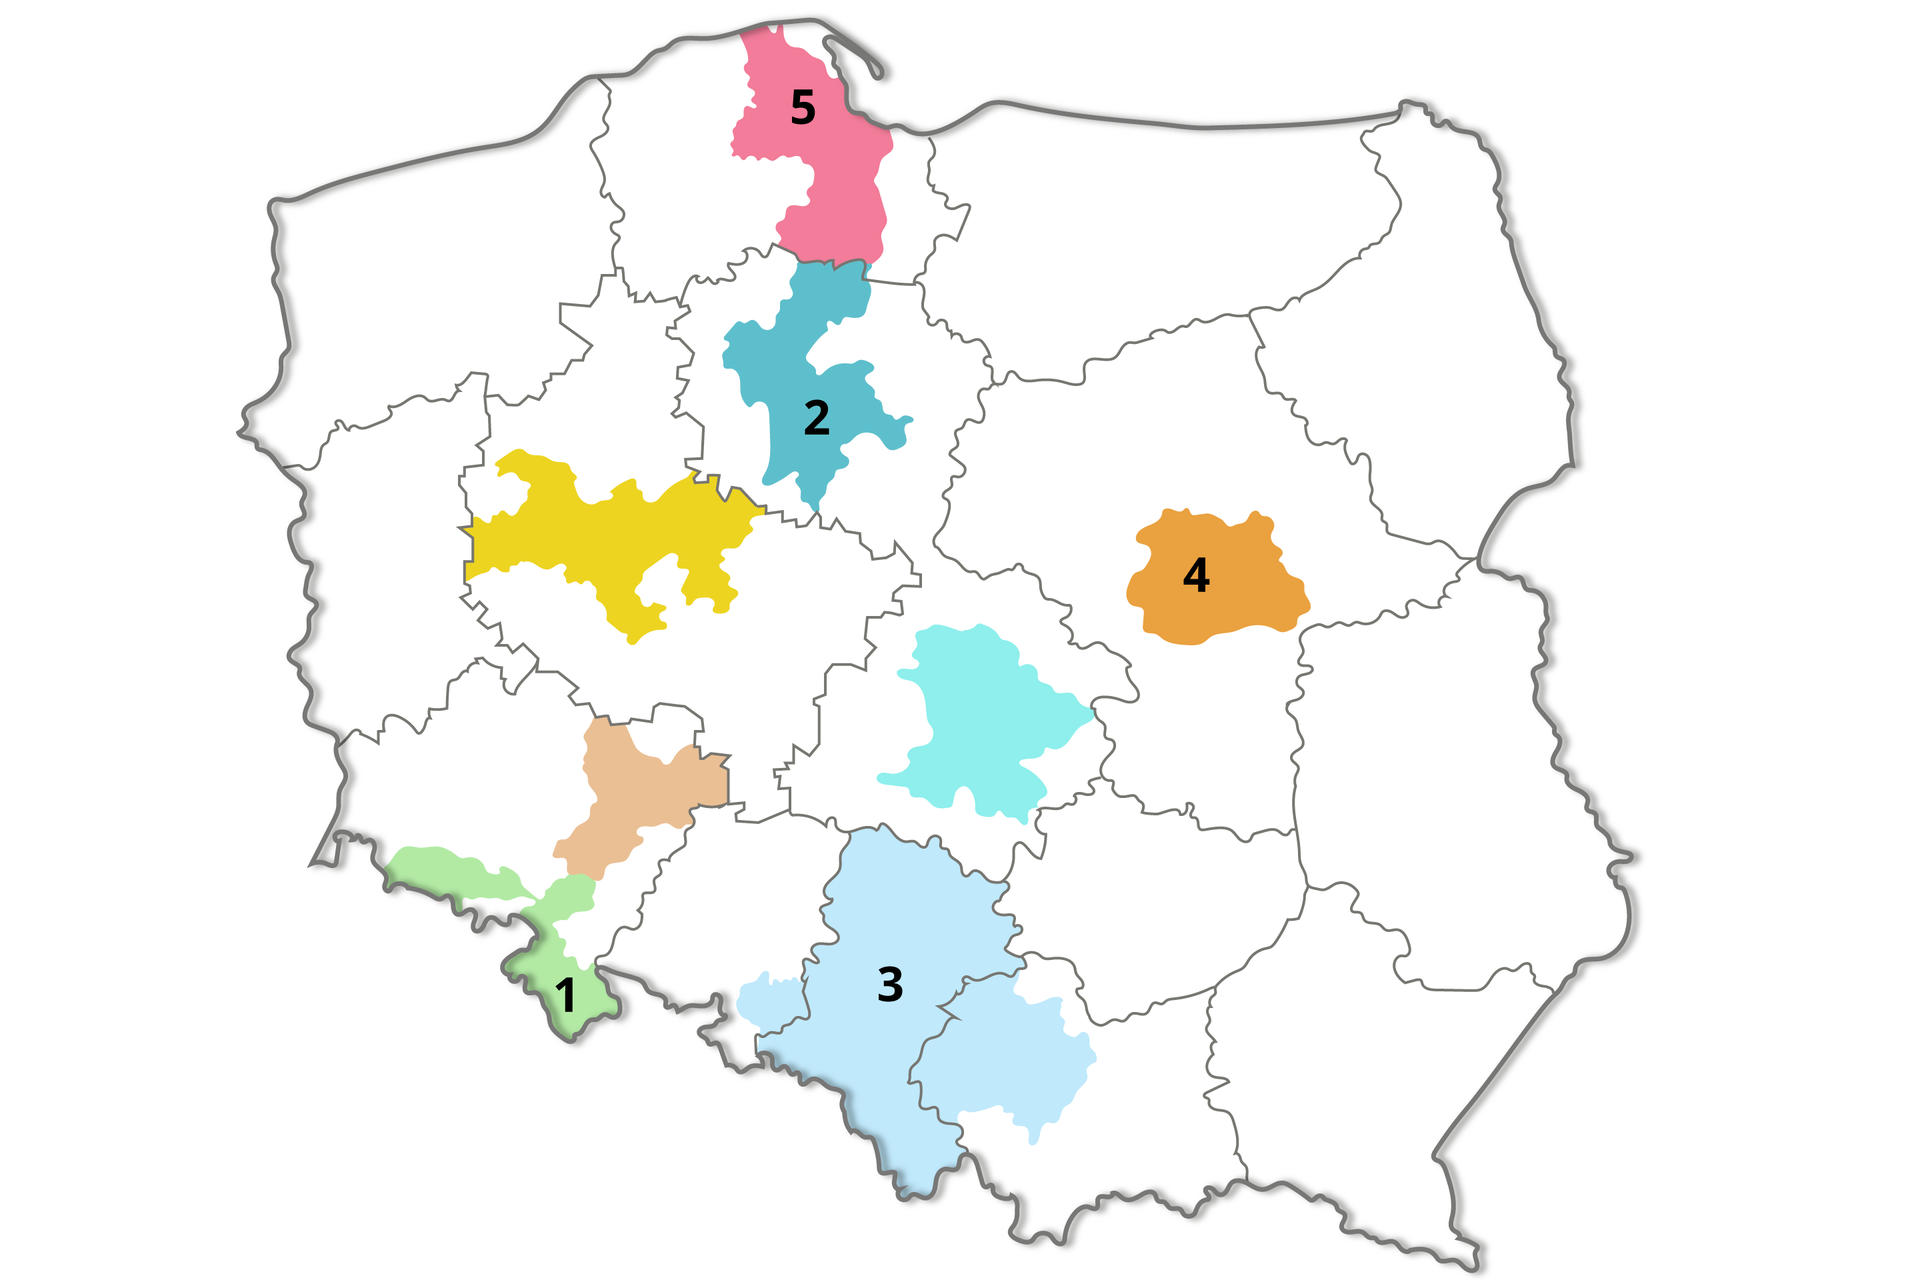 Ilustracja przedstawia mapę Polski. Cyfrą 1 zaznaczono obszar w województwie dolnośląskim, cyfrą 2 w kujawsko‑pomorskim, cyfrą 3 w śląskim i małopolskim, cyfrą 4 centralną część województwa mazowieckiego, cyfrą 5 obszar w województwie pomorskim. 